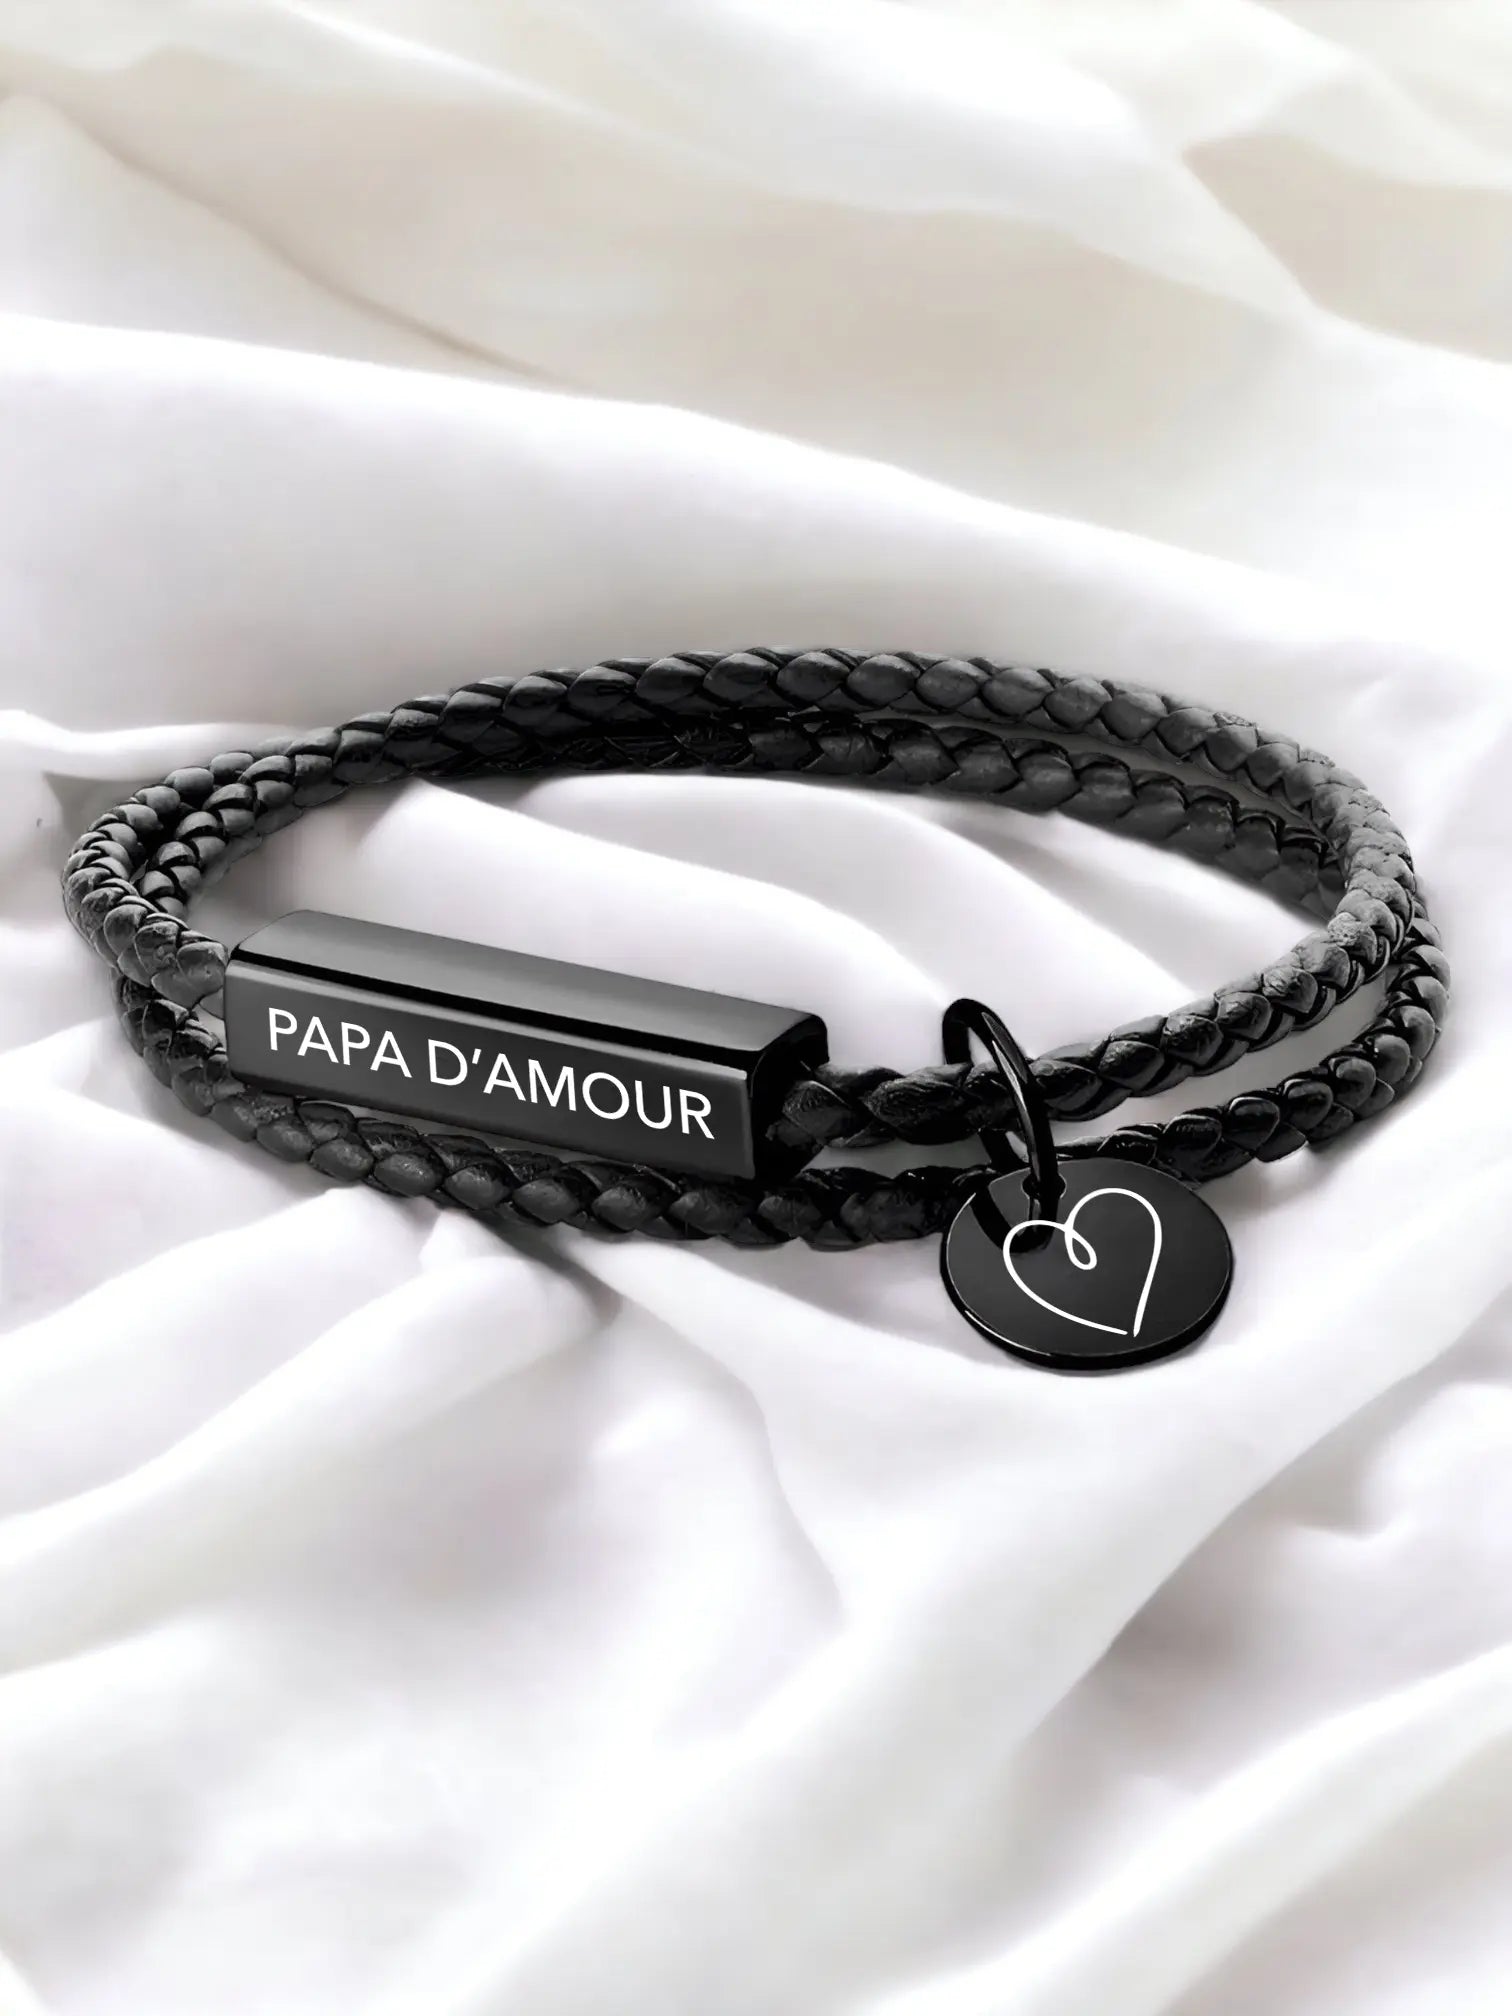 Papa d'Amour leather bracelet